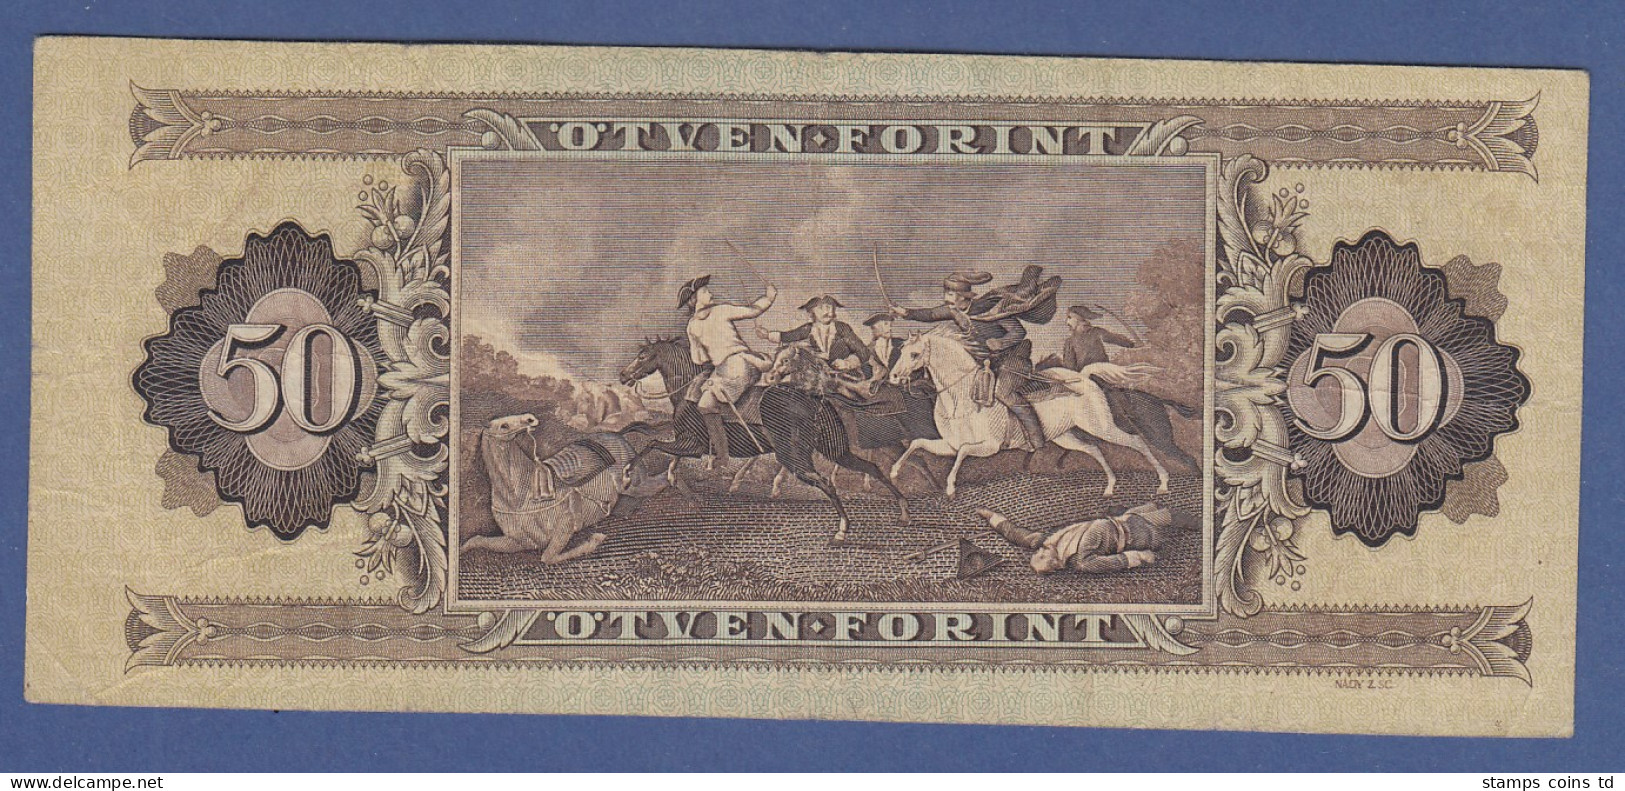 Banknote Ungarn 50 Forint 1986 - Altri – Europa